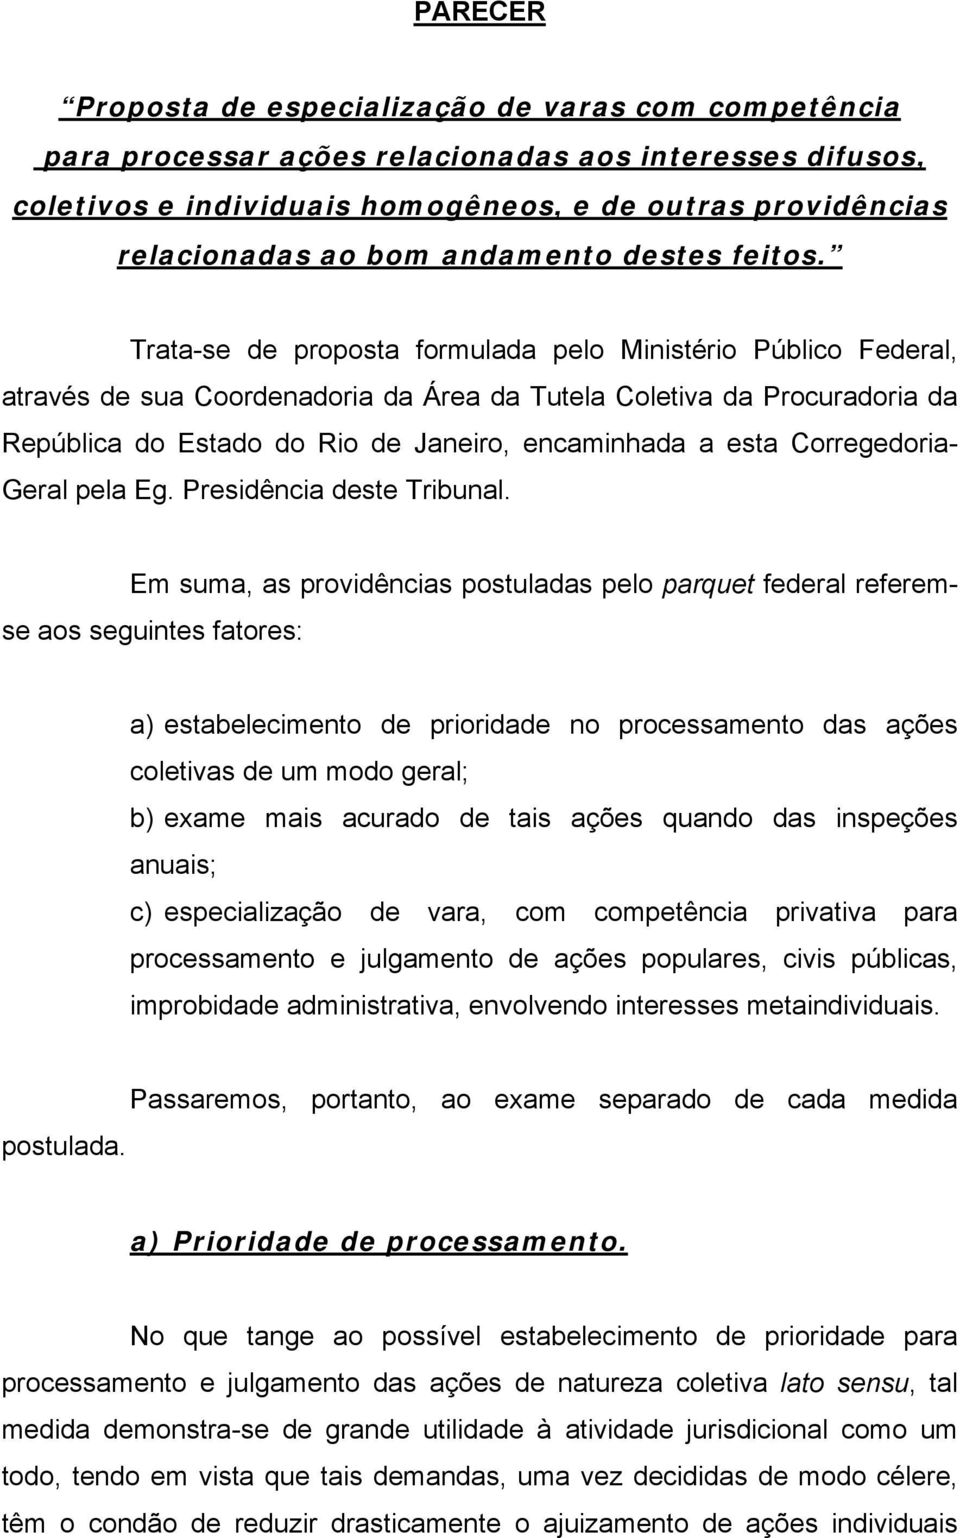 Trata-se de proposta formulada pelo Ministério Público Federal, através de sua Coordenadoria da Área da Tutela Coletiva da Procuradoria da República do Estado do Rio de Janeiro, encaminhada a esta